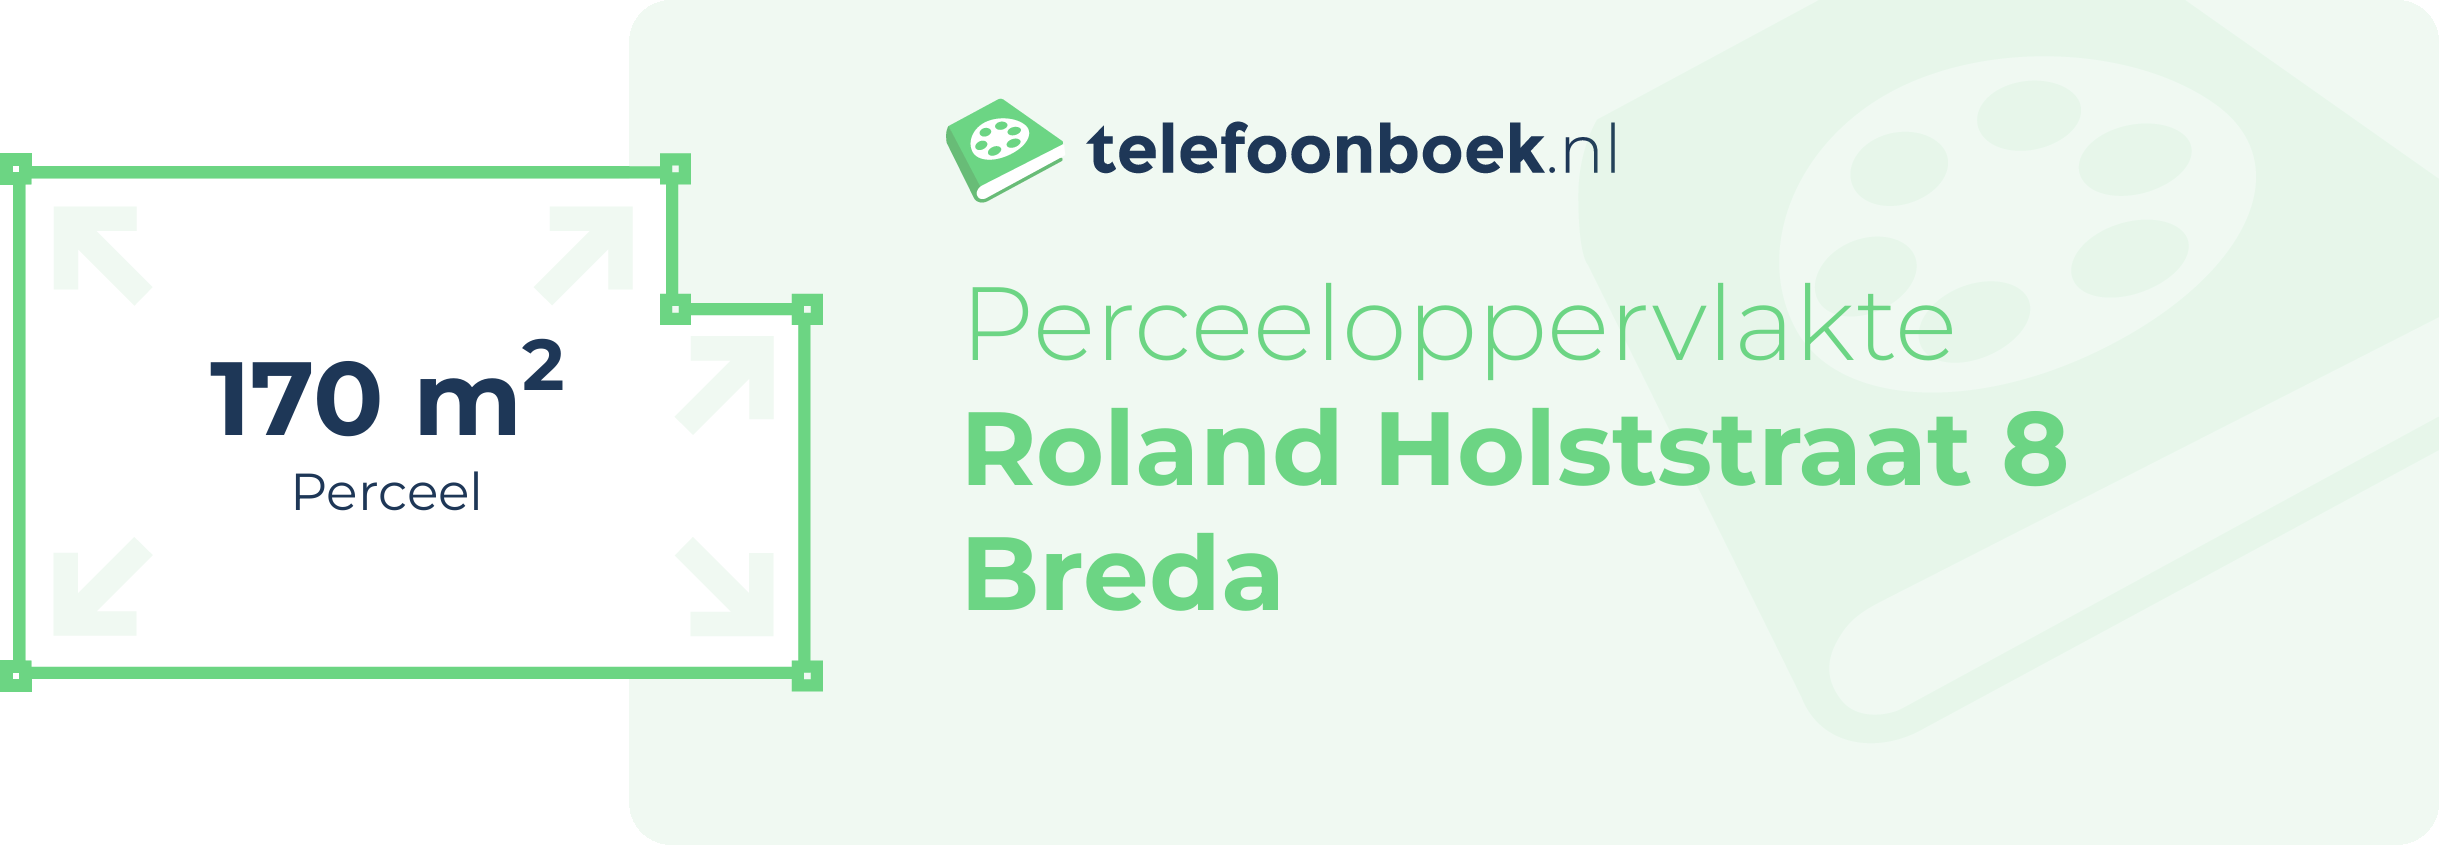 Perceeloppervlakte Roland Holststraat 8 Breda